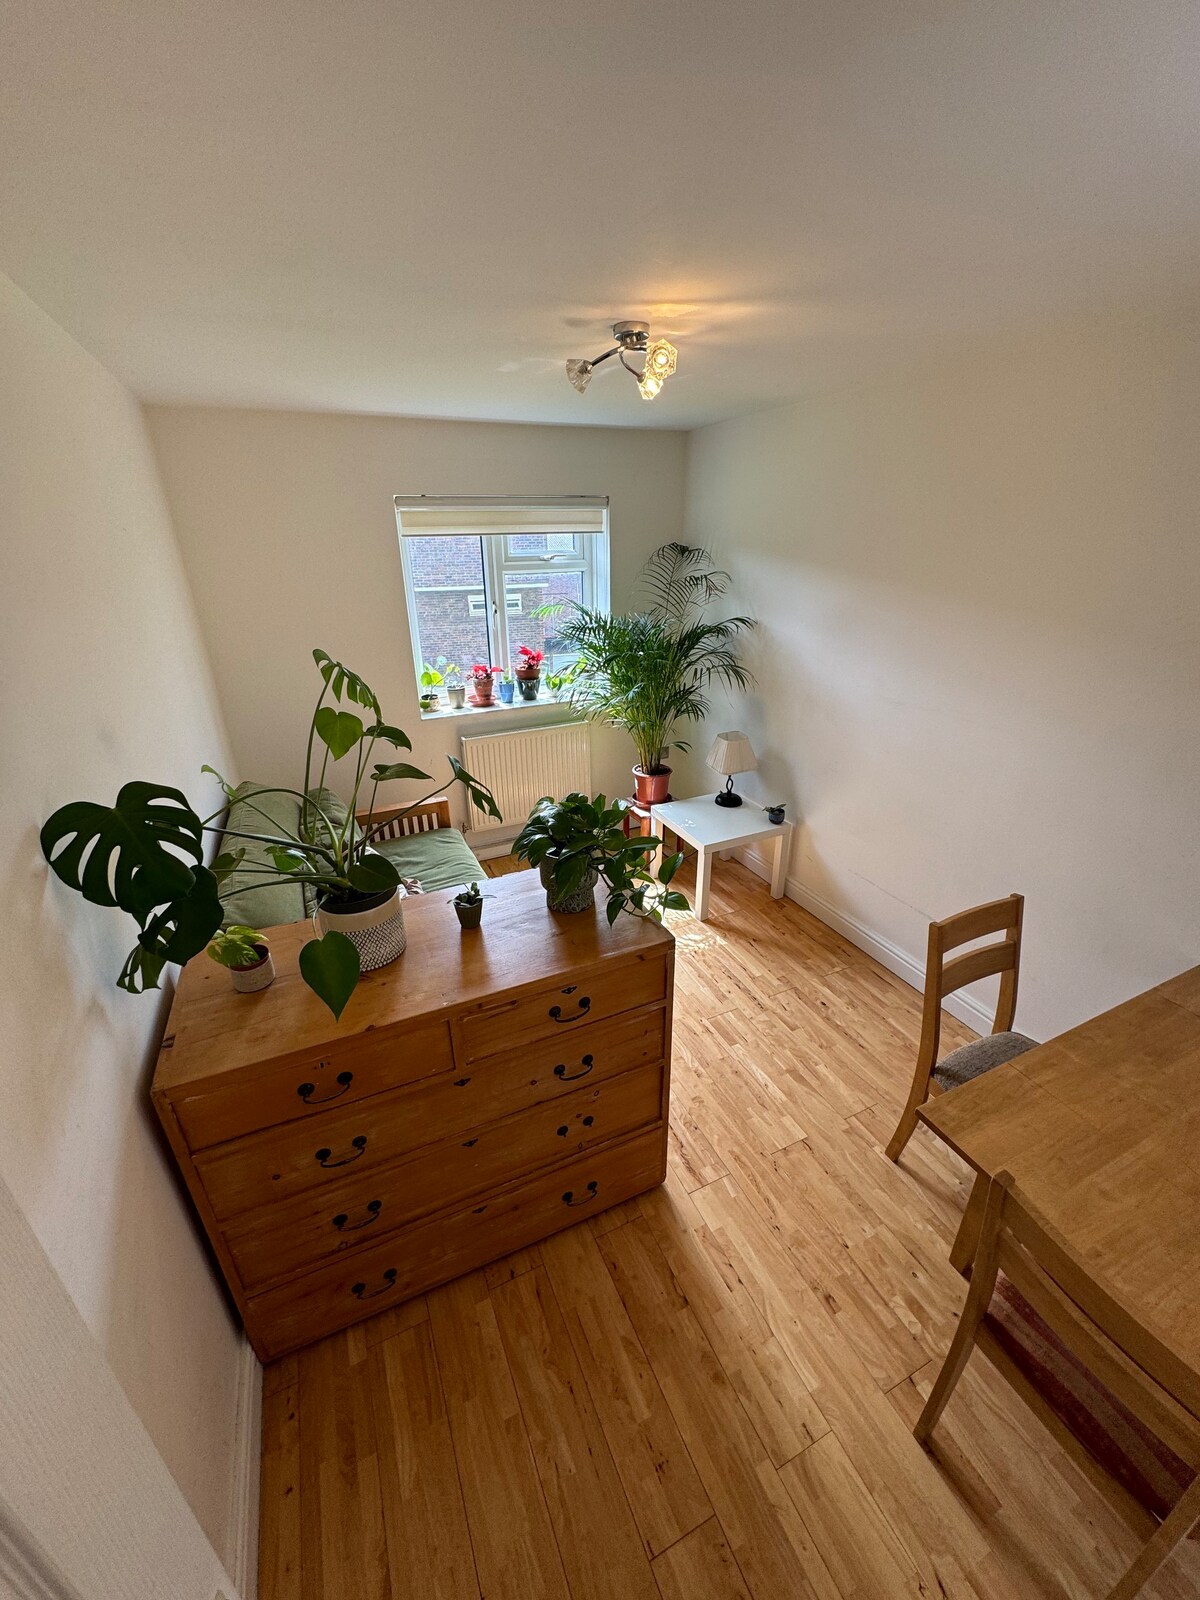 公寓内绿树成荫的房间。